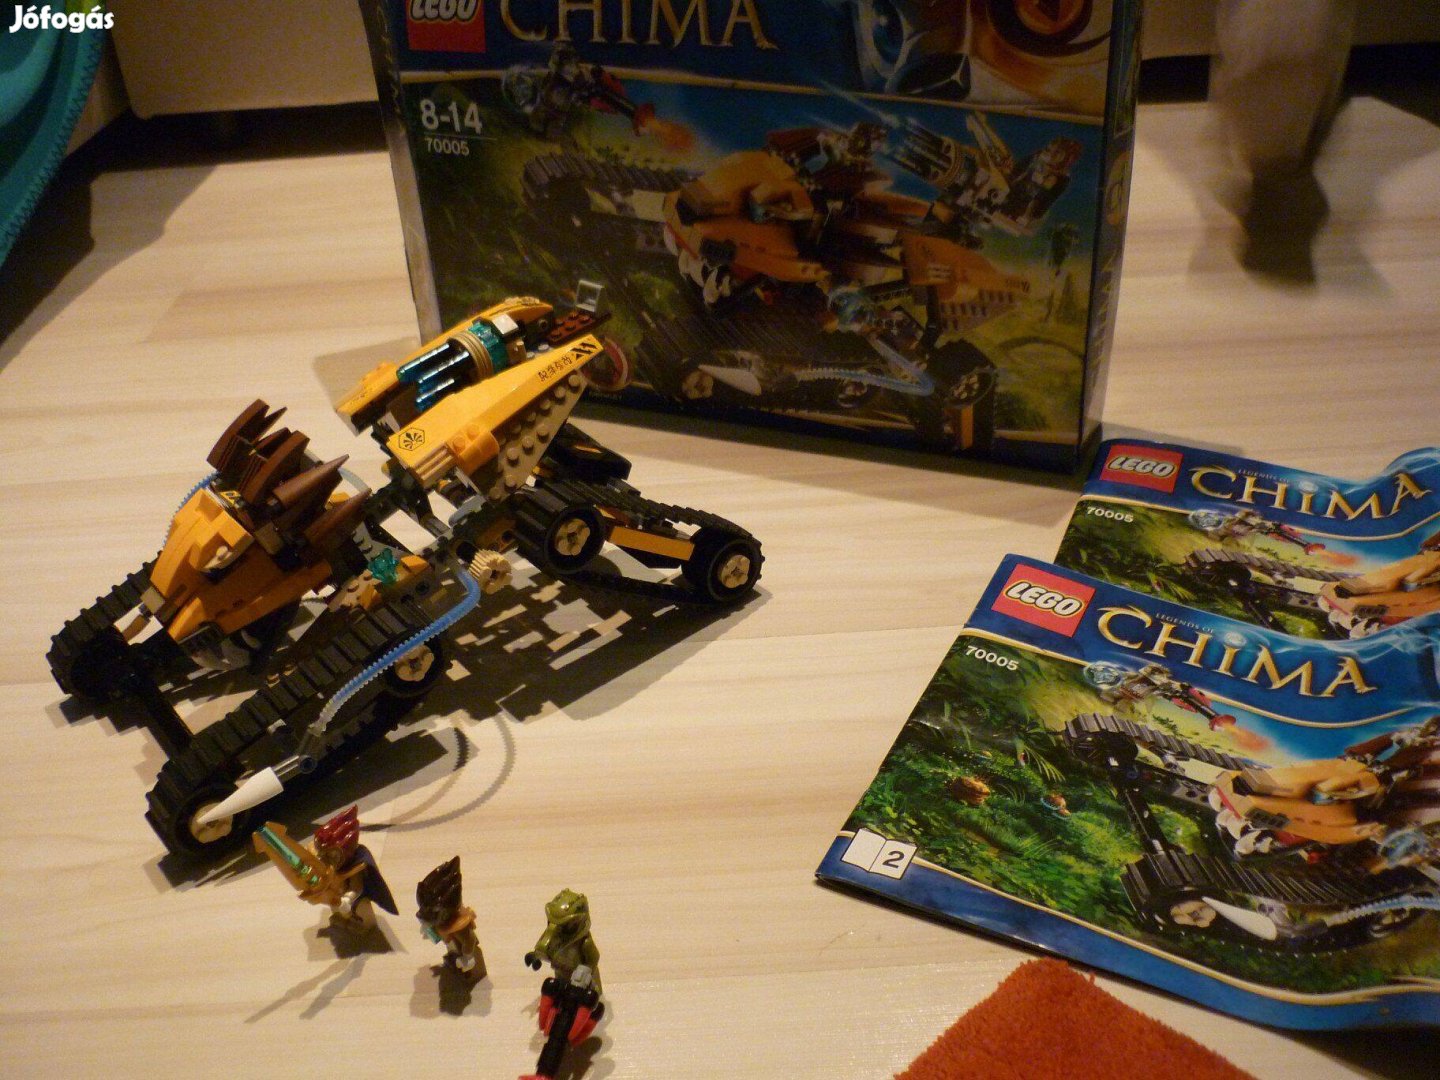 Lego Chima - Laval királyi harcigépe